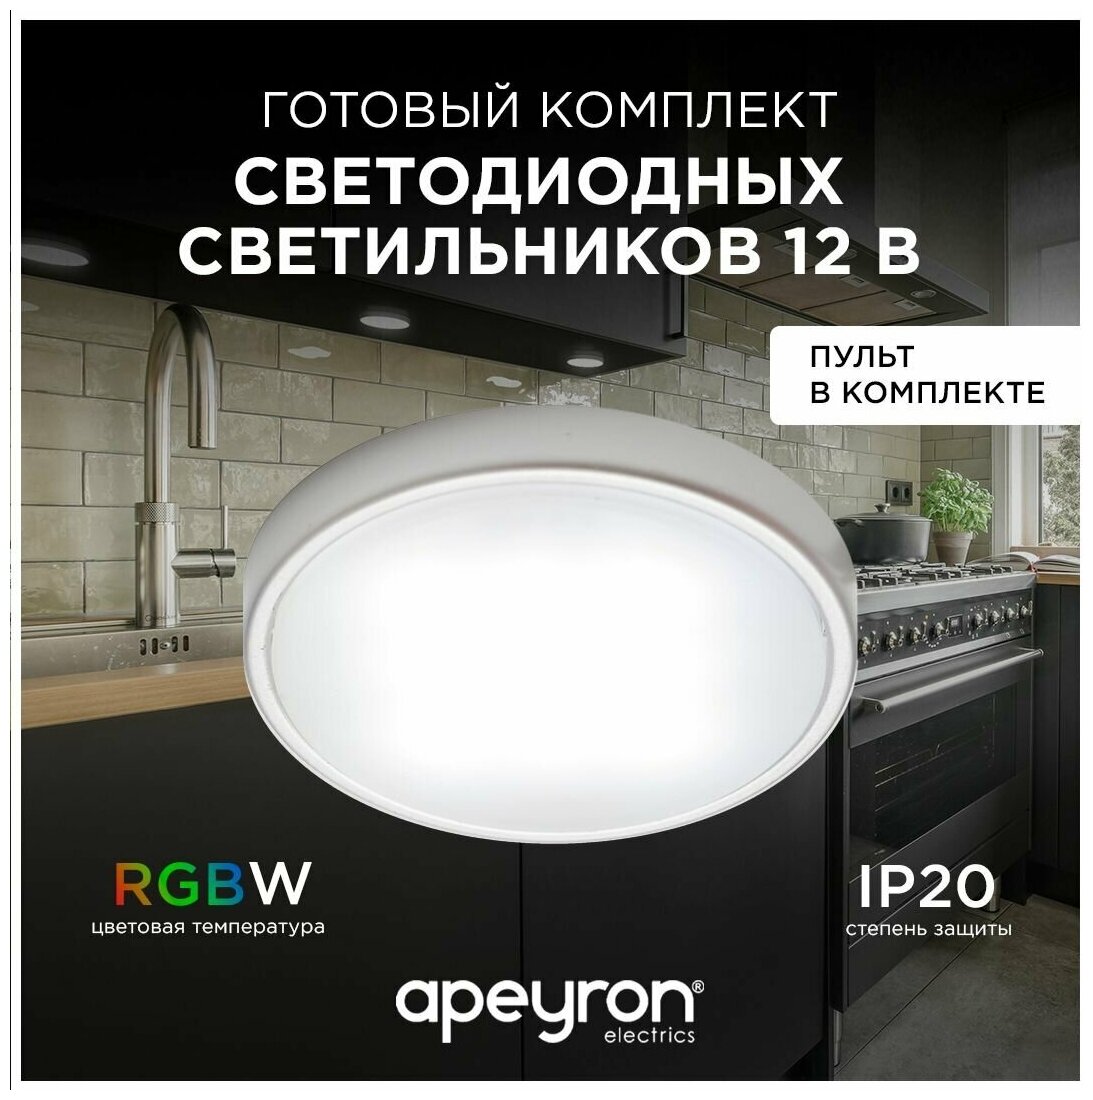 Комплект светодиодных светильников в форме круга / Накладная светодиодная круглая панель / LED освещение для внутренних помещений / 2.7Втх4шт / RGBW / 800Лм / гарантия 1 год / 12В / белый / 12-04 / d-58 мм